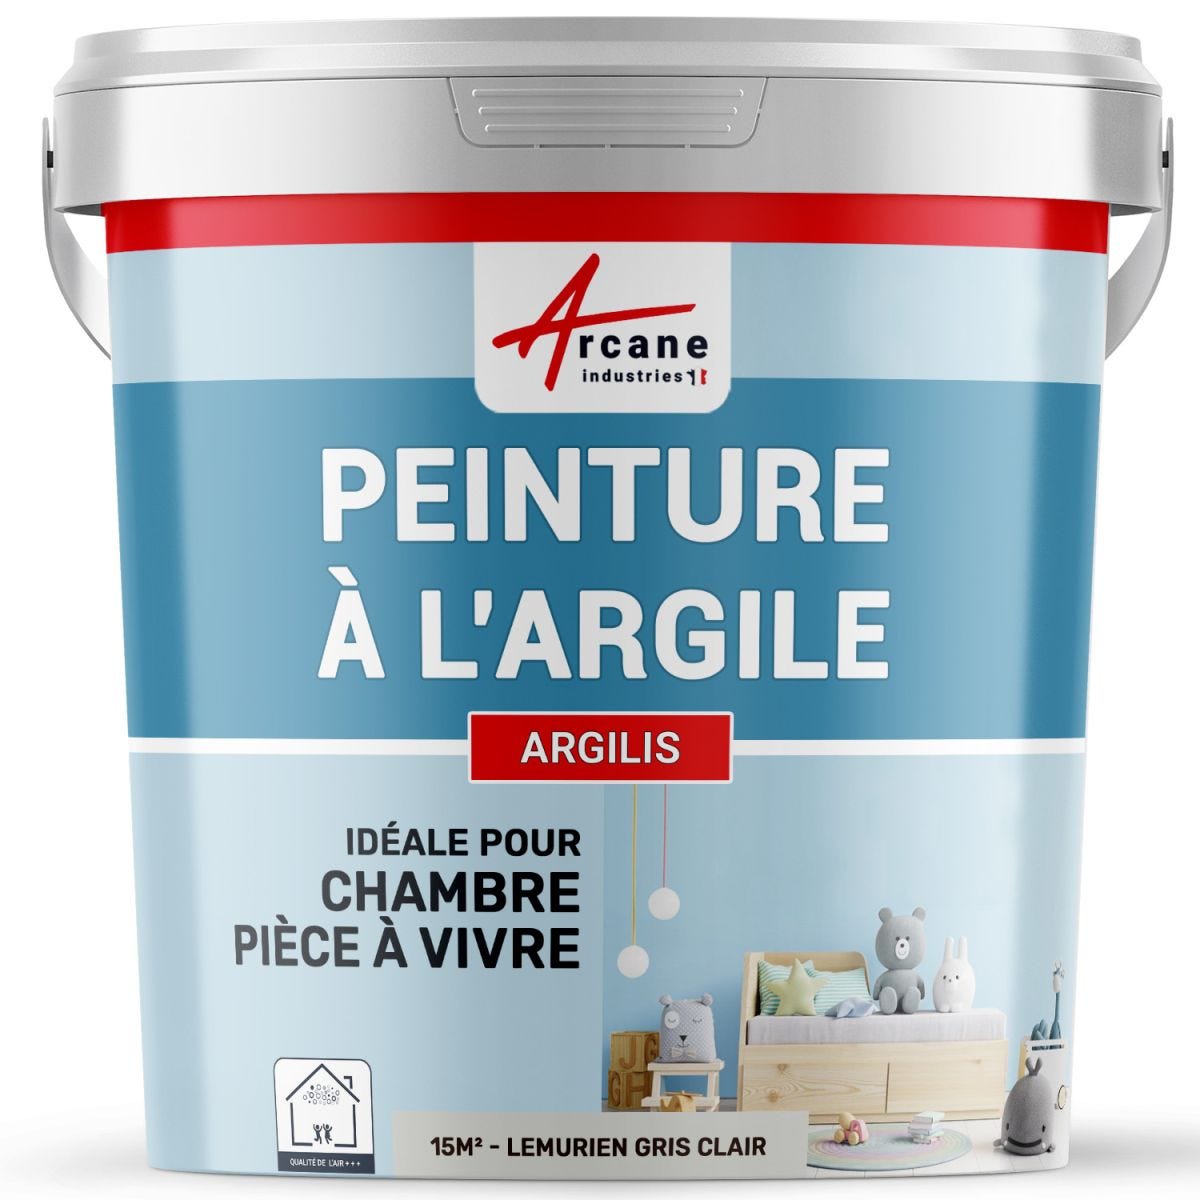 PEINTURE ARGILE naturelle et saine - ARGILIS Lemurien Gris Clair - 15 m² (2.5 kg en 1 couche)ARCANE INDUSTRIES 0